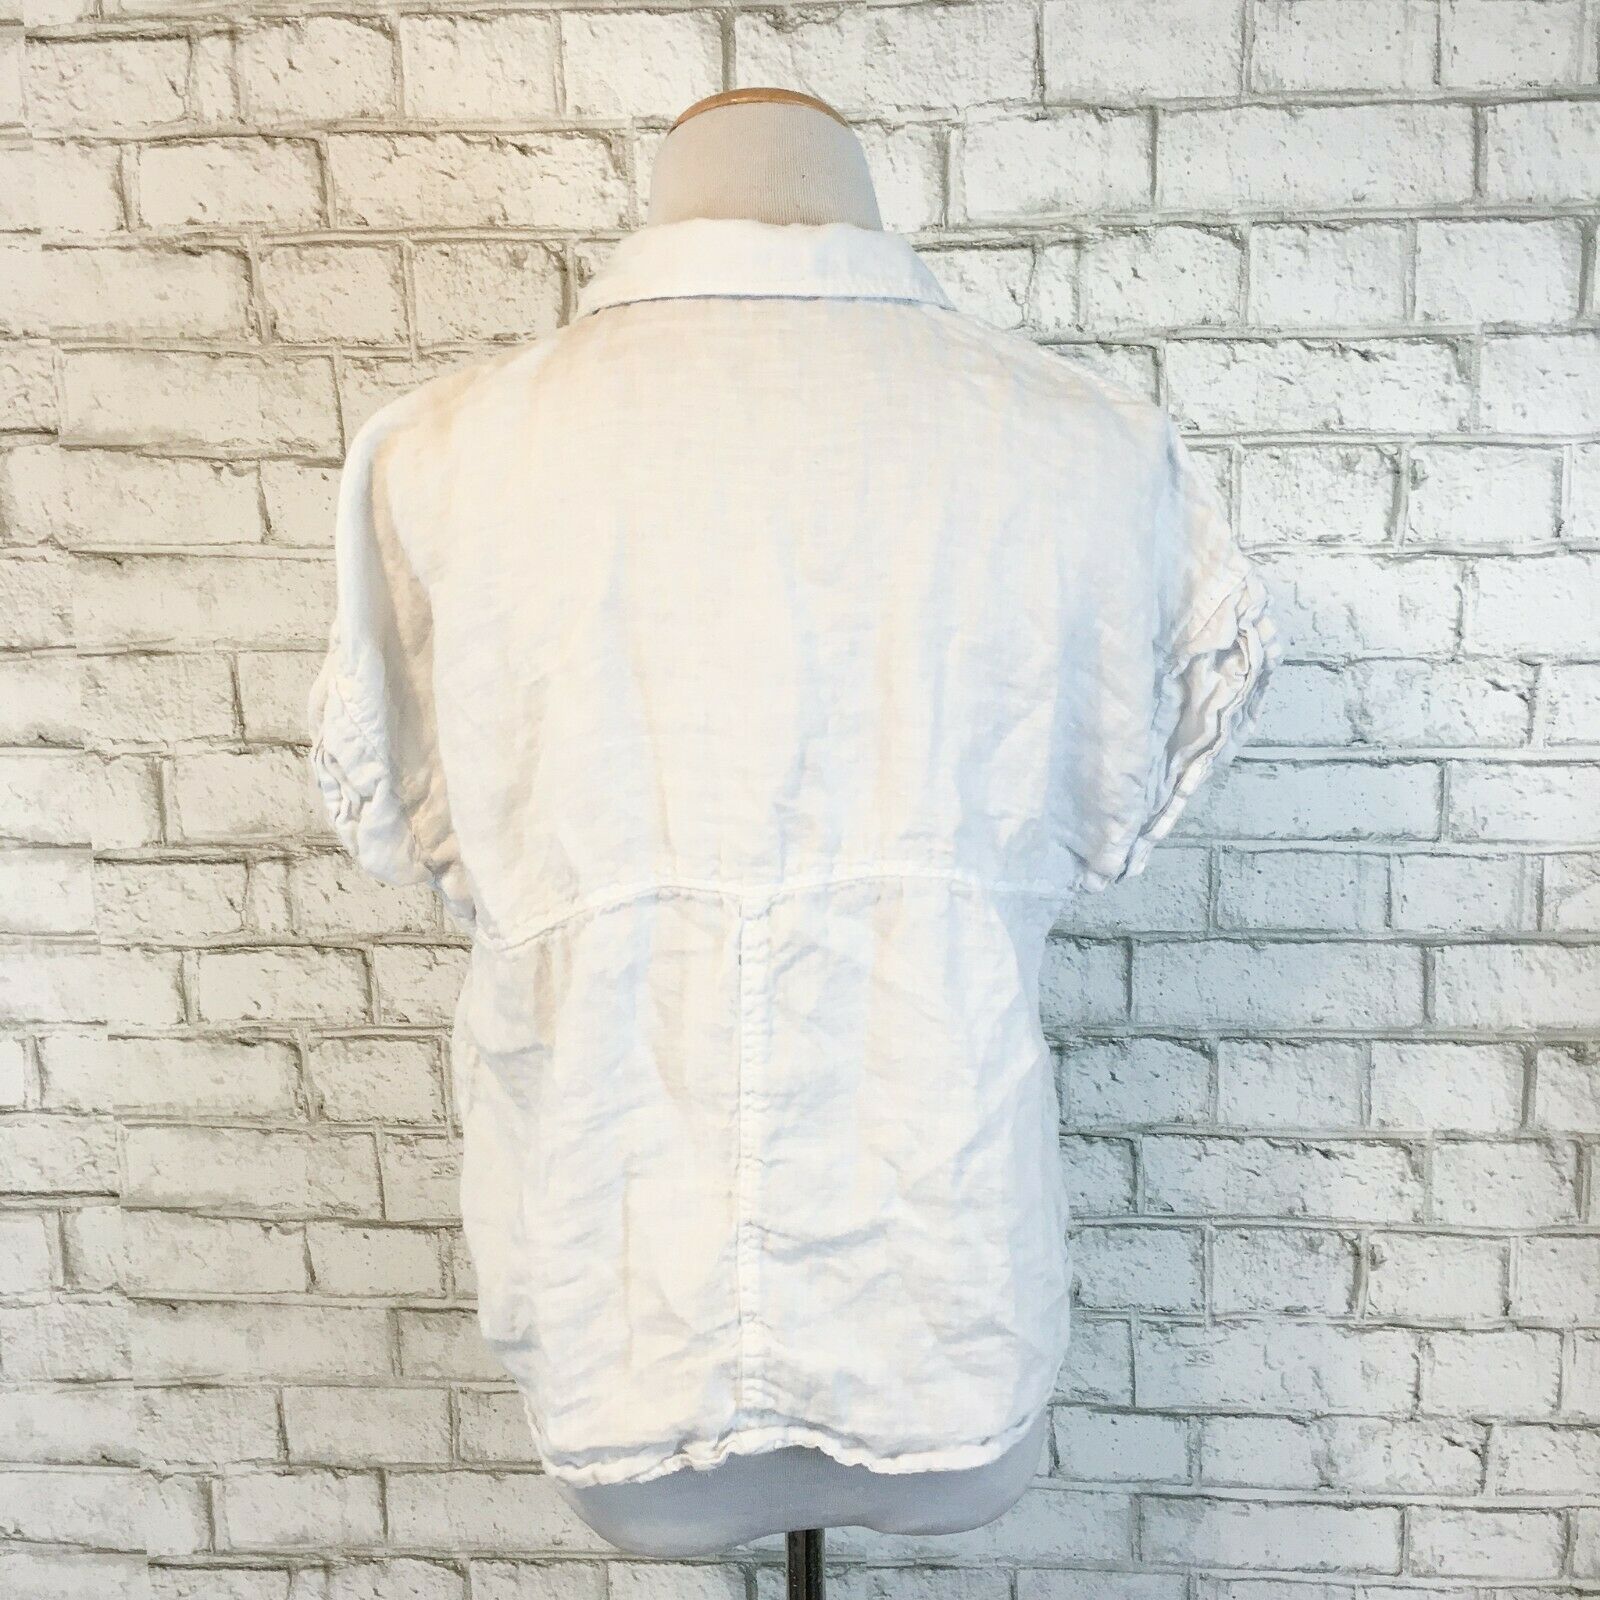 Zara Women's 100% Linen White Short Sleeve Button Front Shirt Size ...